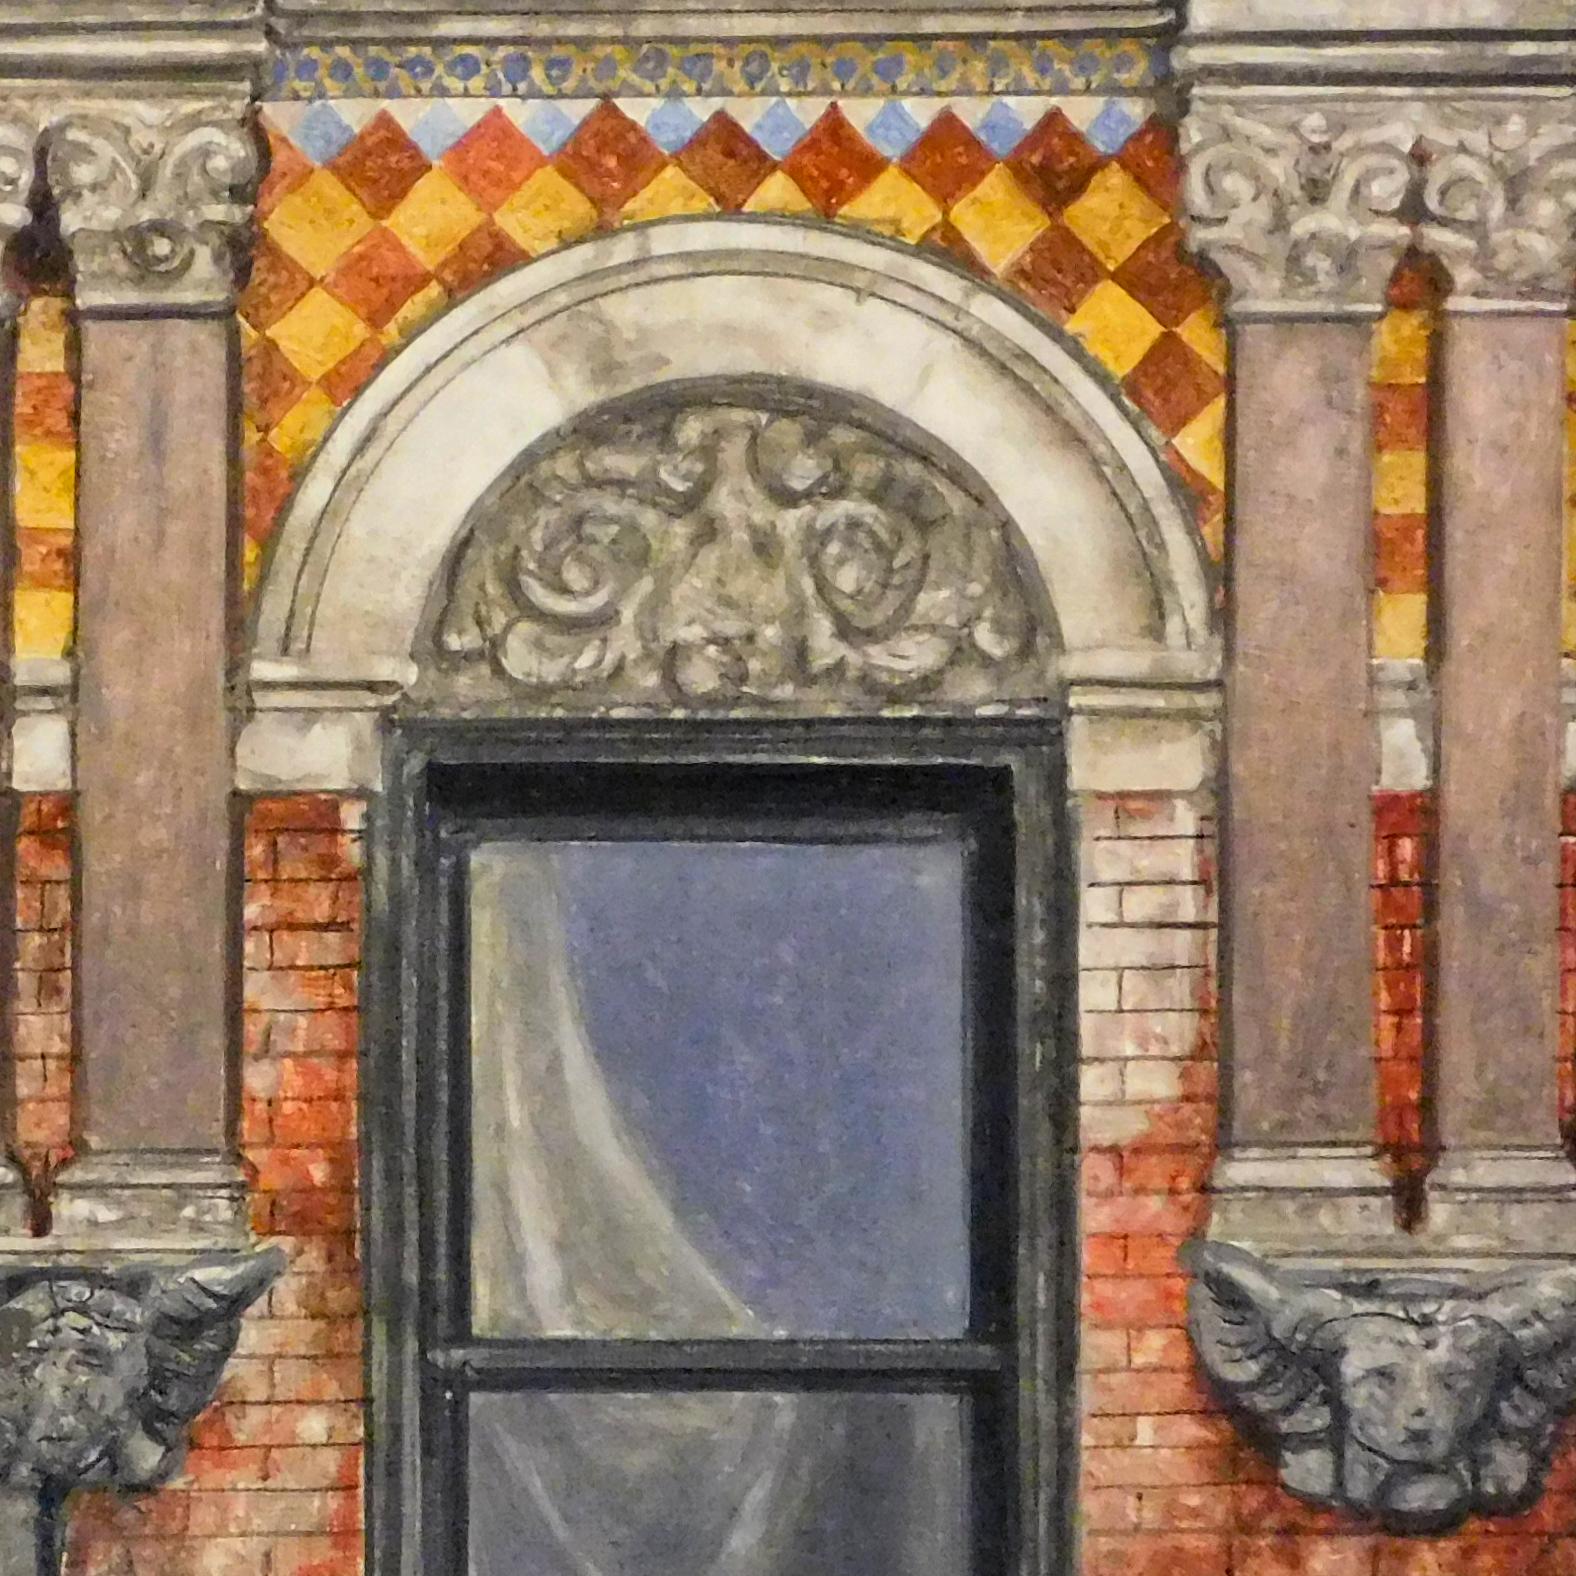 Madison Street (peinture à l'huile réaliste de l'édifice du bâtiment de la ville de New York) - Painting de Richard Britell